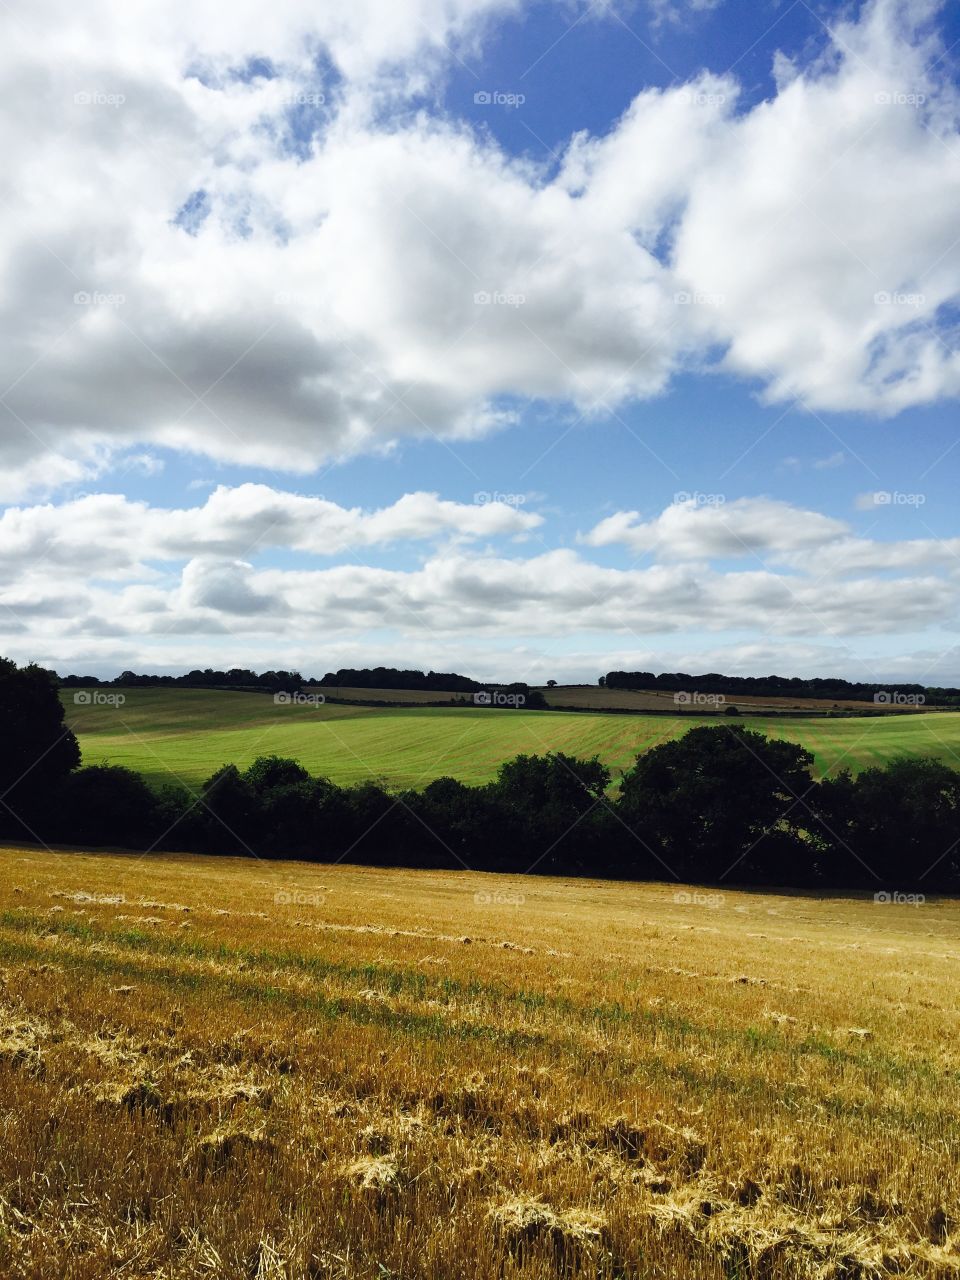 Fields of England's. Taken in West Berkshire, England